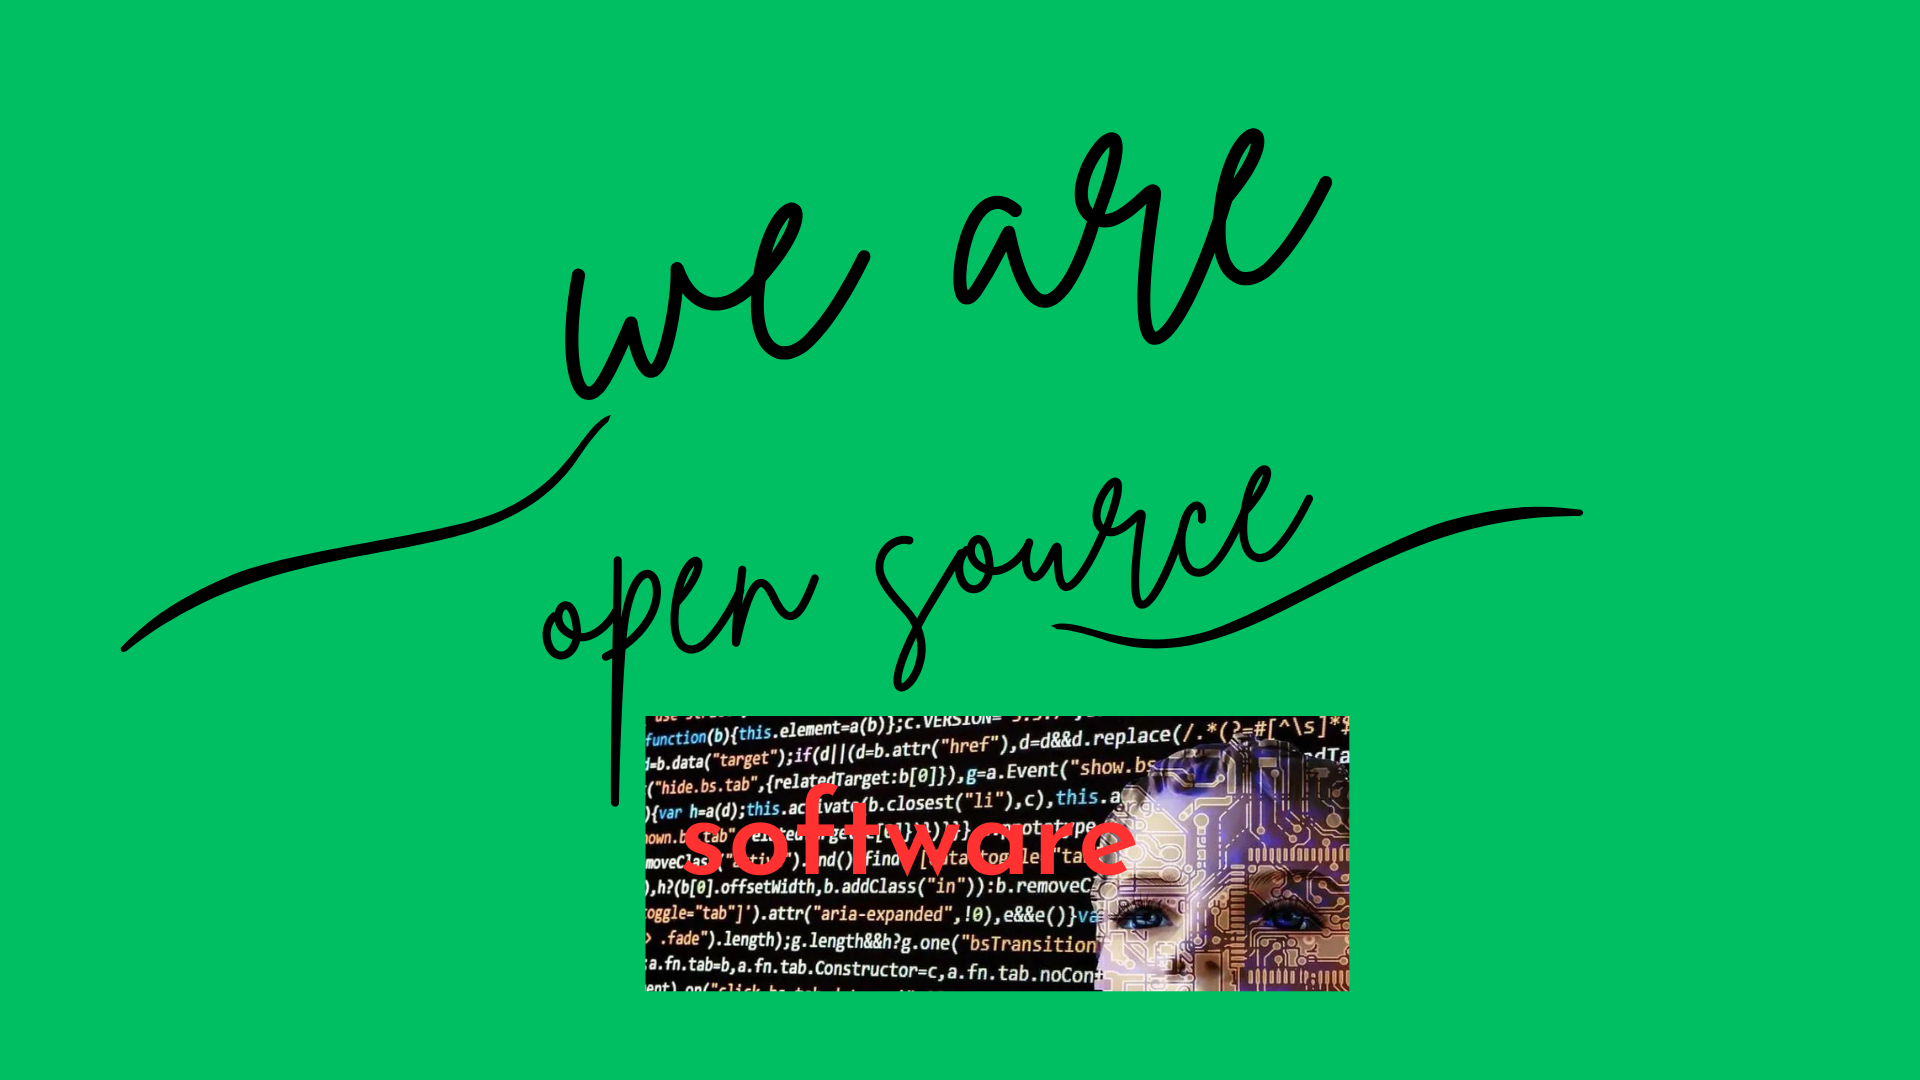 2022/2023 Genap PTI Open Source Software